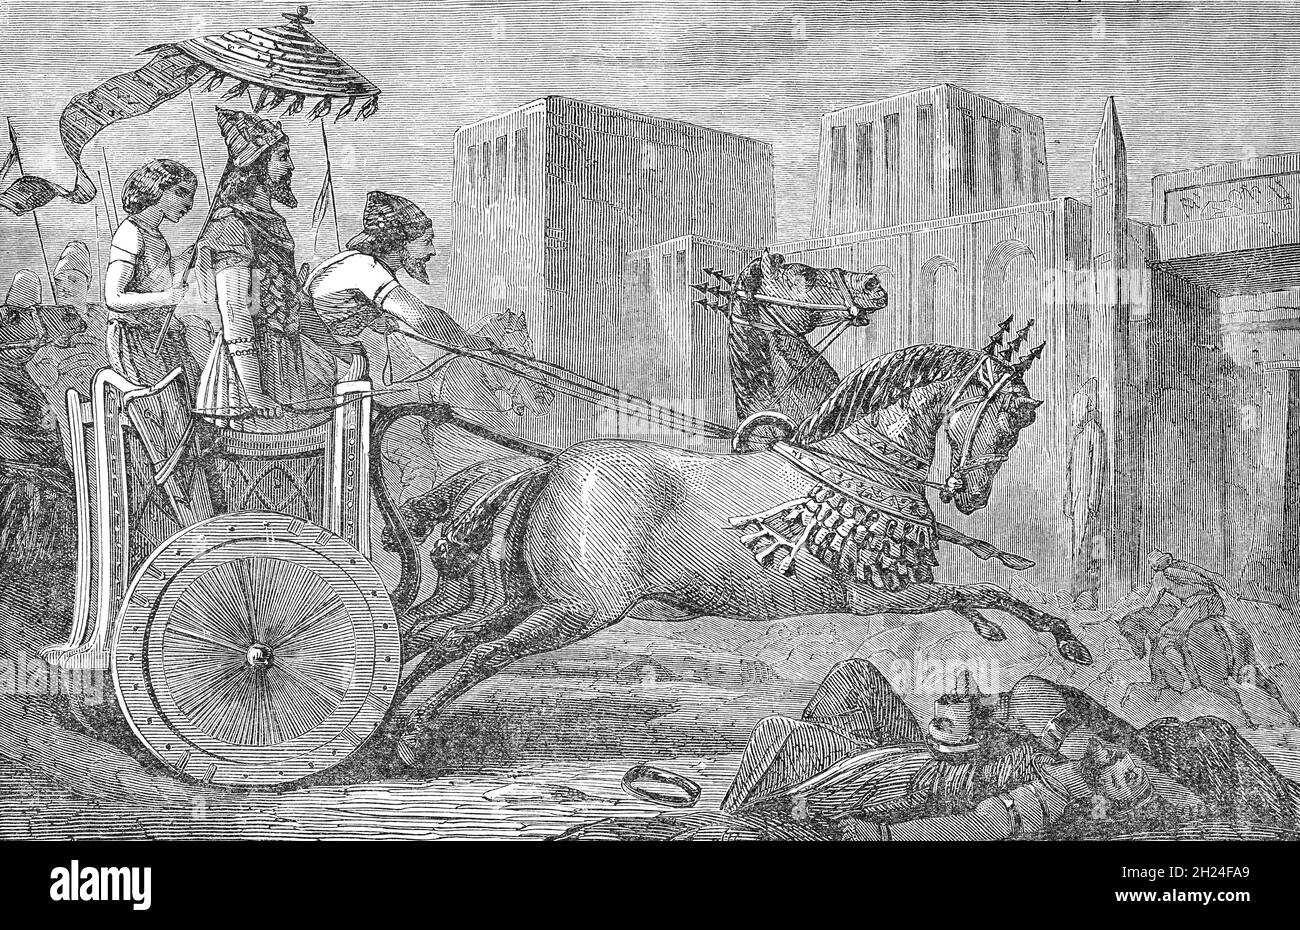 Eine Illustration des späten 19. Jahrhunderts von Cambyses II., dem zweiten König der Könige des Achämeniden-Reiches von 530 bis 522 v. Chr., der in Memphis in Ägypten eintrat. Er war der Sohn und Nachfolger von Cyrus dem Großen. Die von Cyrus geplante Eroberung Ägyptens war die größte Errungenschaft der Herrschaft Cambyses und fand unter der Herrschaft von Psamtik III. Statt Nachdem Cambyses die Schlacht von Pelusium (525) im Nildelta gewonnen und Heliopolis und Memphis erobert hatte, brach der ägyptische Widerstand zusammen. Stockfoto